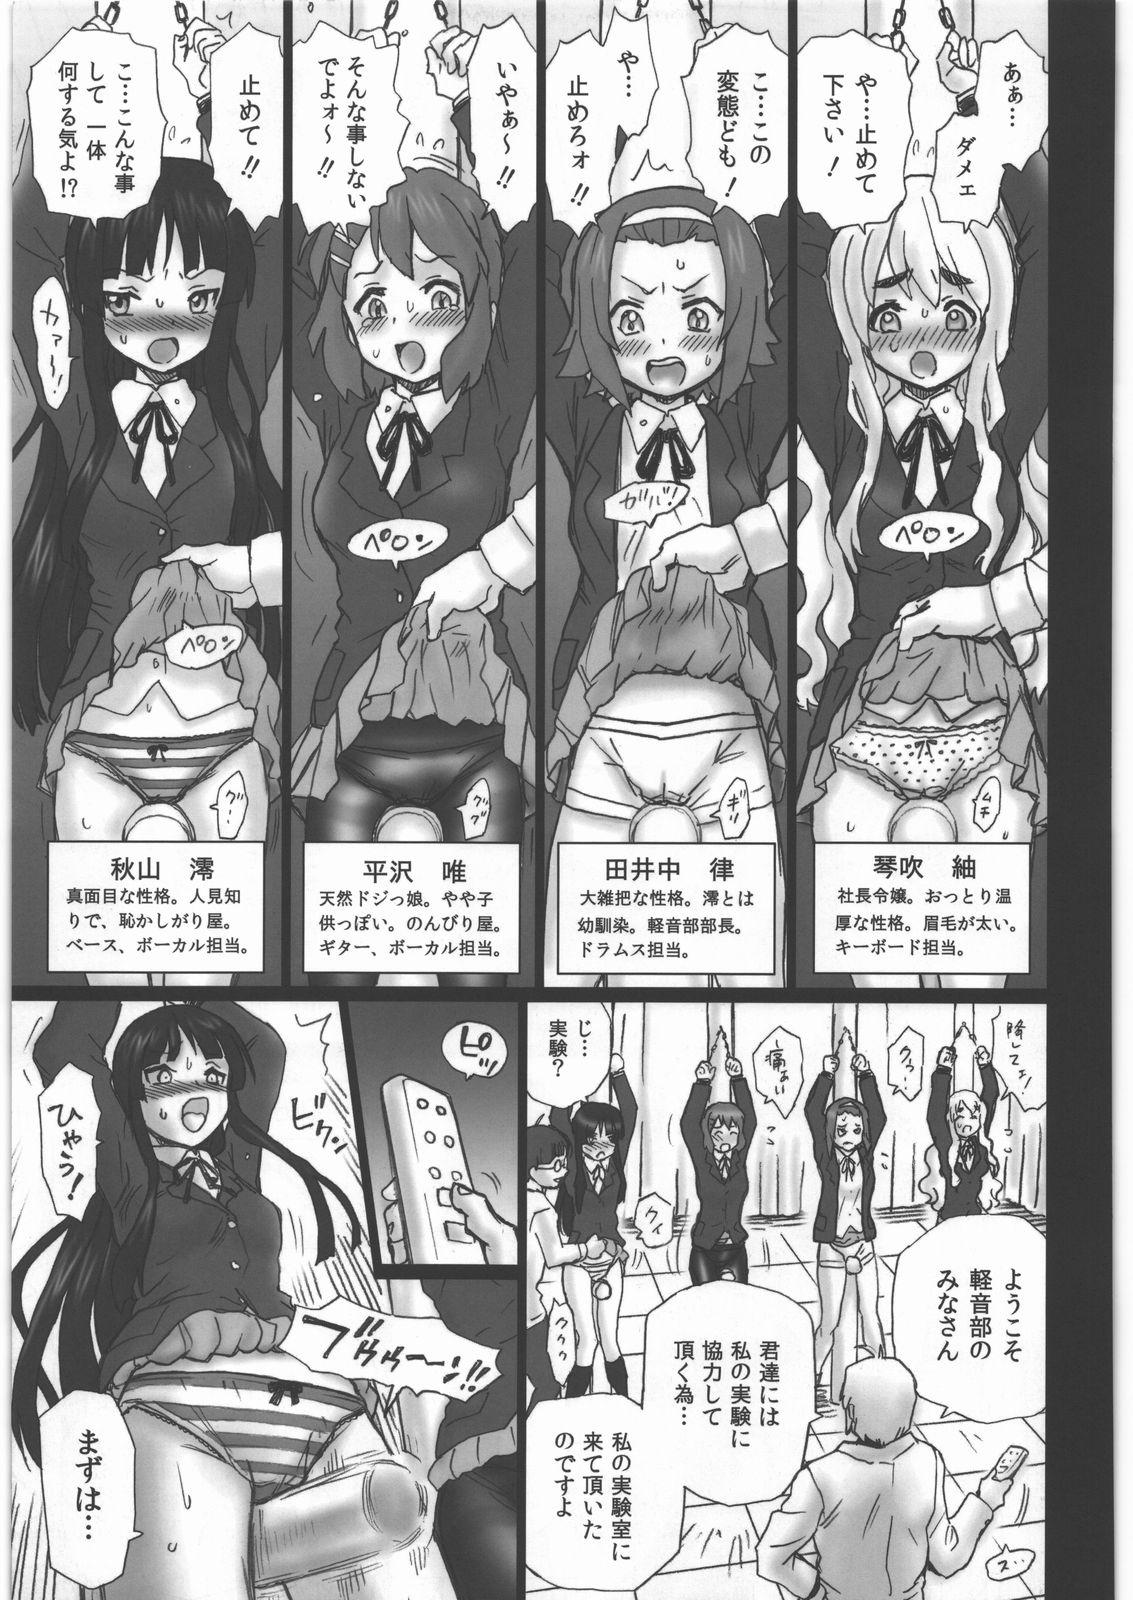 Game TAIL-MAN KEION! 5 GIRLS BOOK - K-on Satin - Page 4